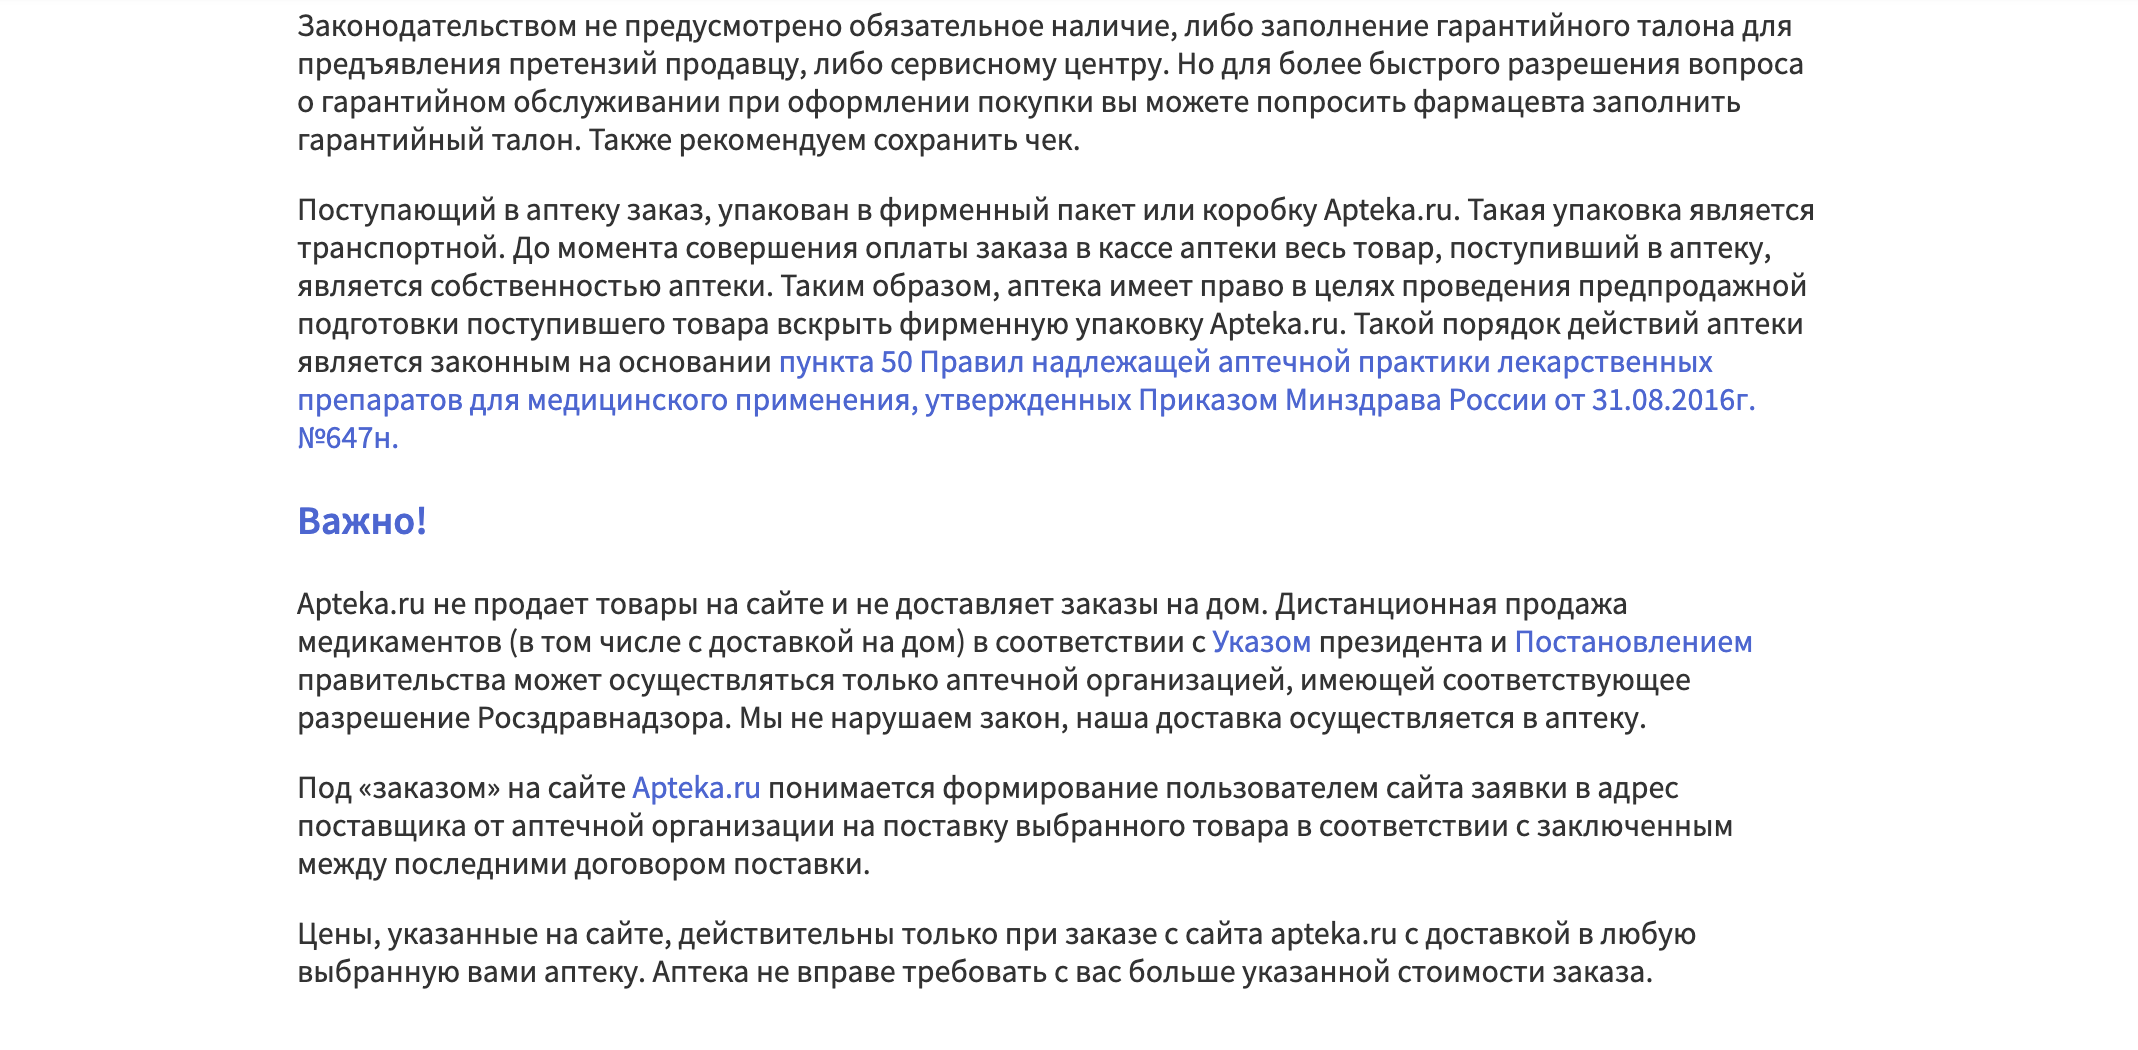 условия доставки Apteka.ru